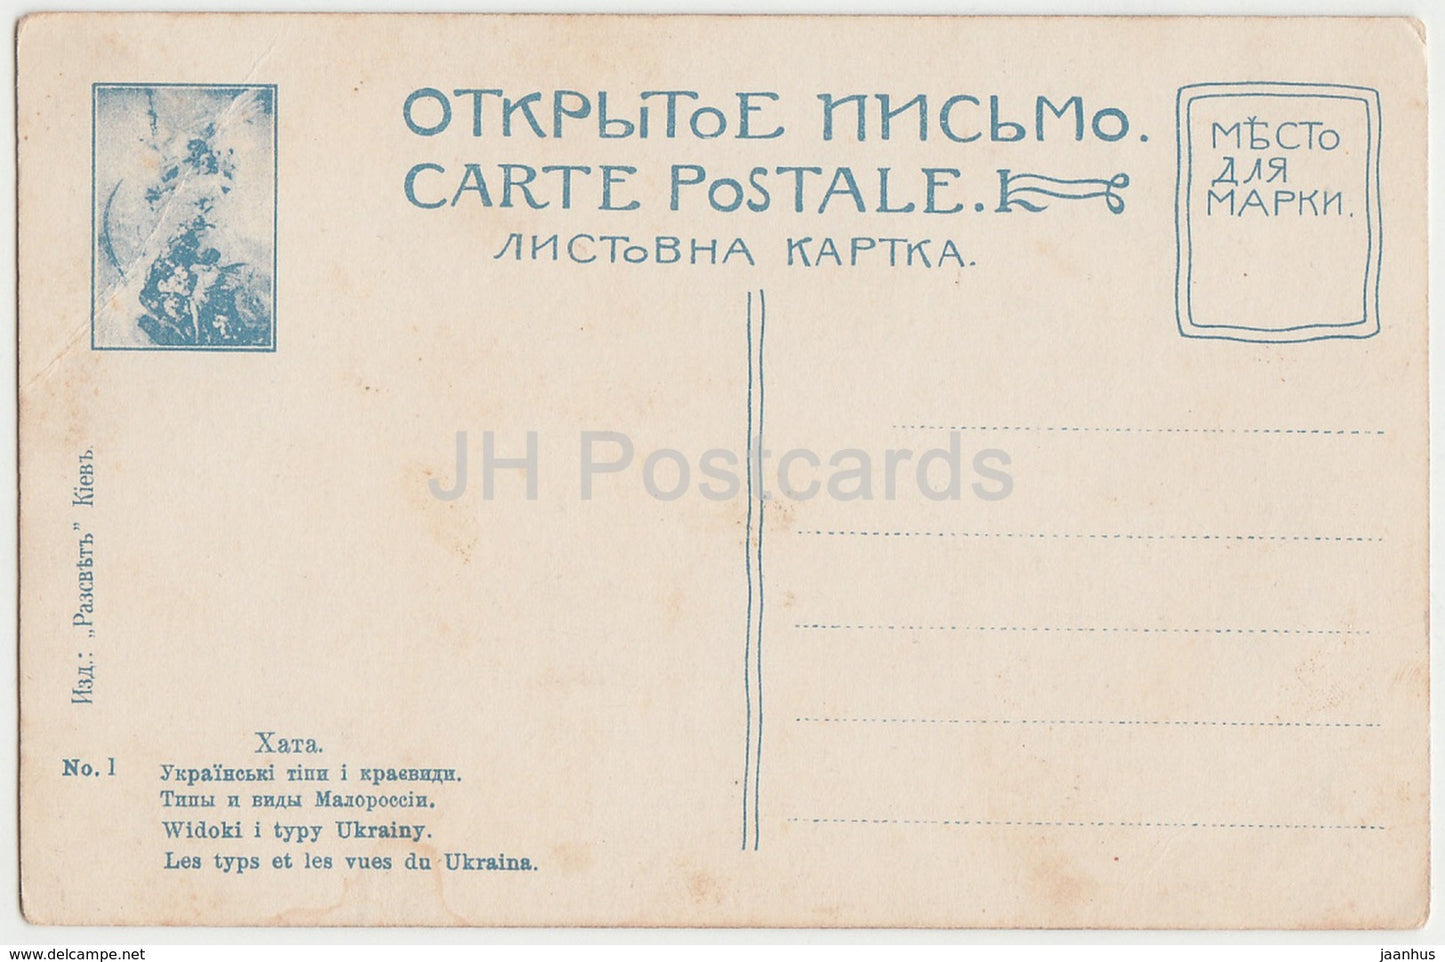 Khata - Maison Ukrainienne - Les Typs et les vues du Ukraina - carte postale ancienne - Ukraine - Russie Impériale - inutilisée